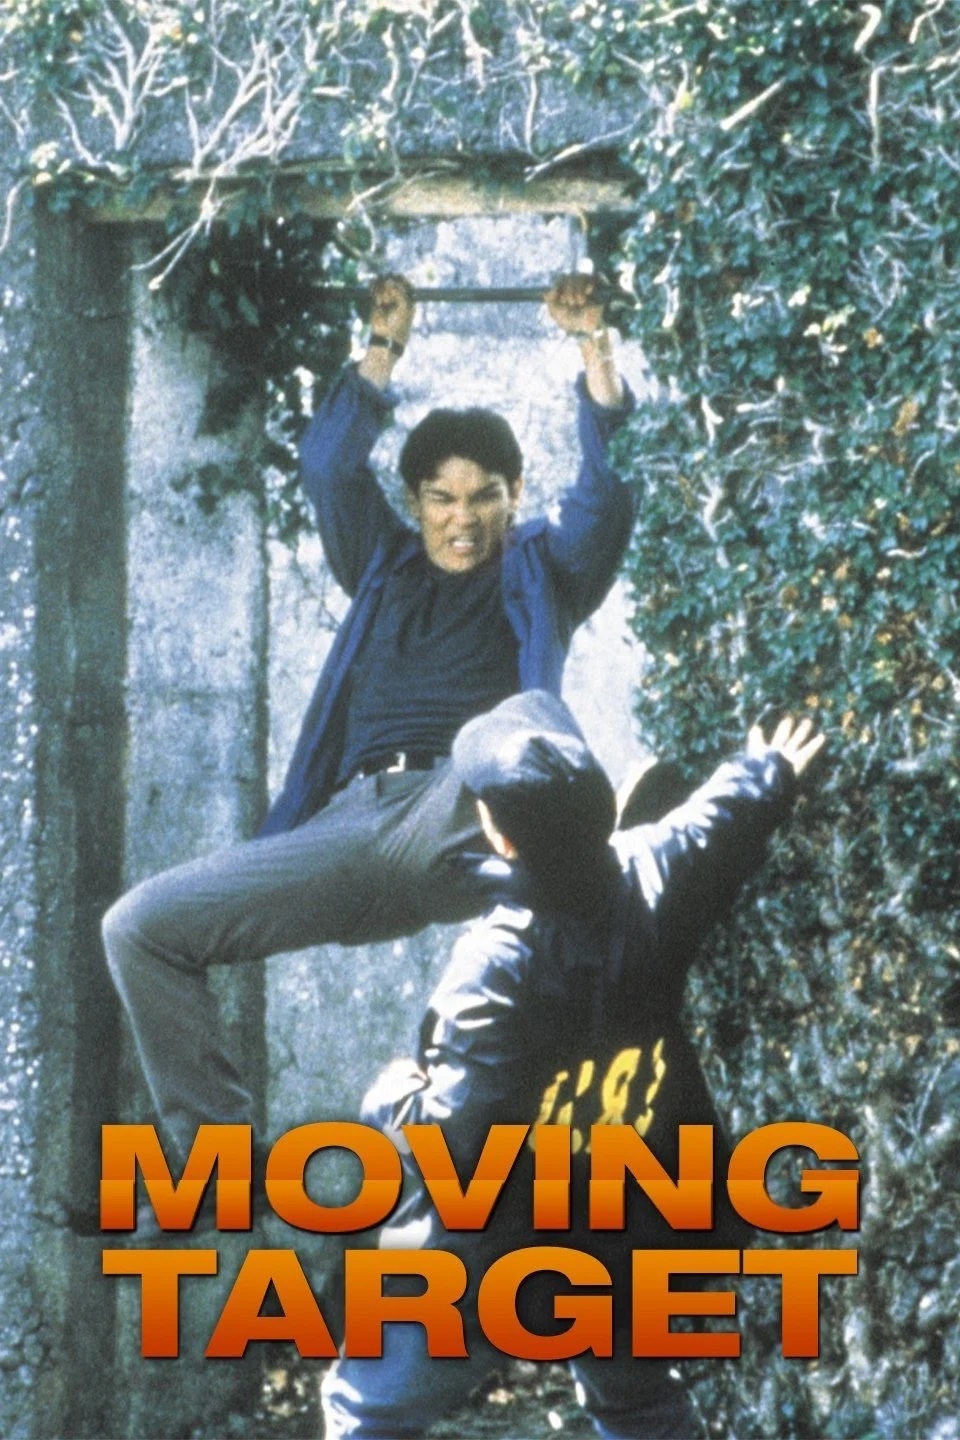 Moving Target (2000) Screenshot 2